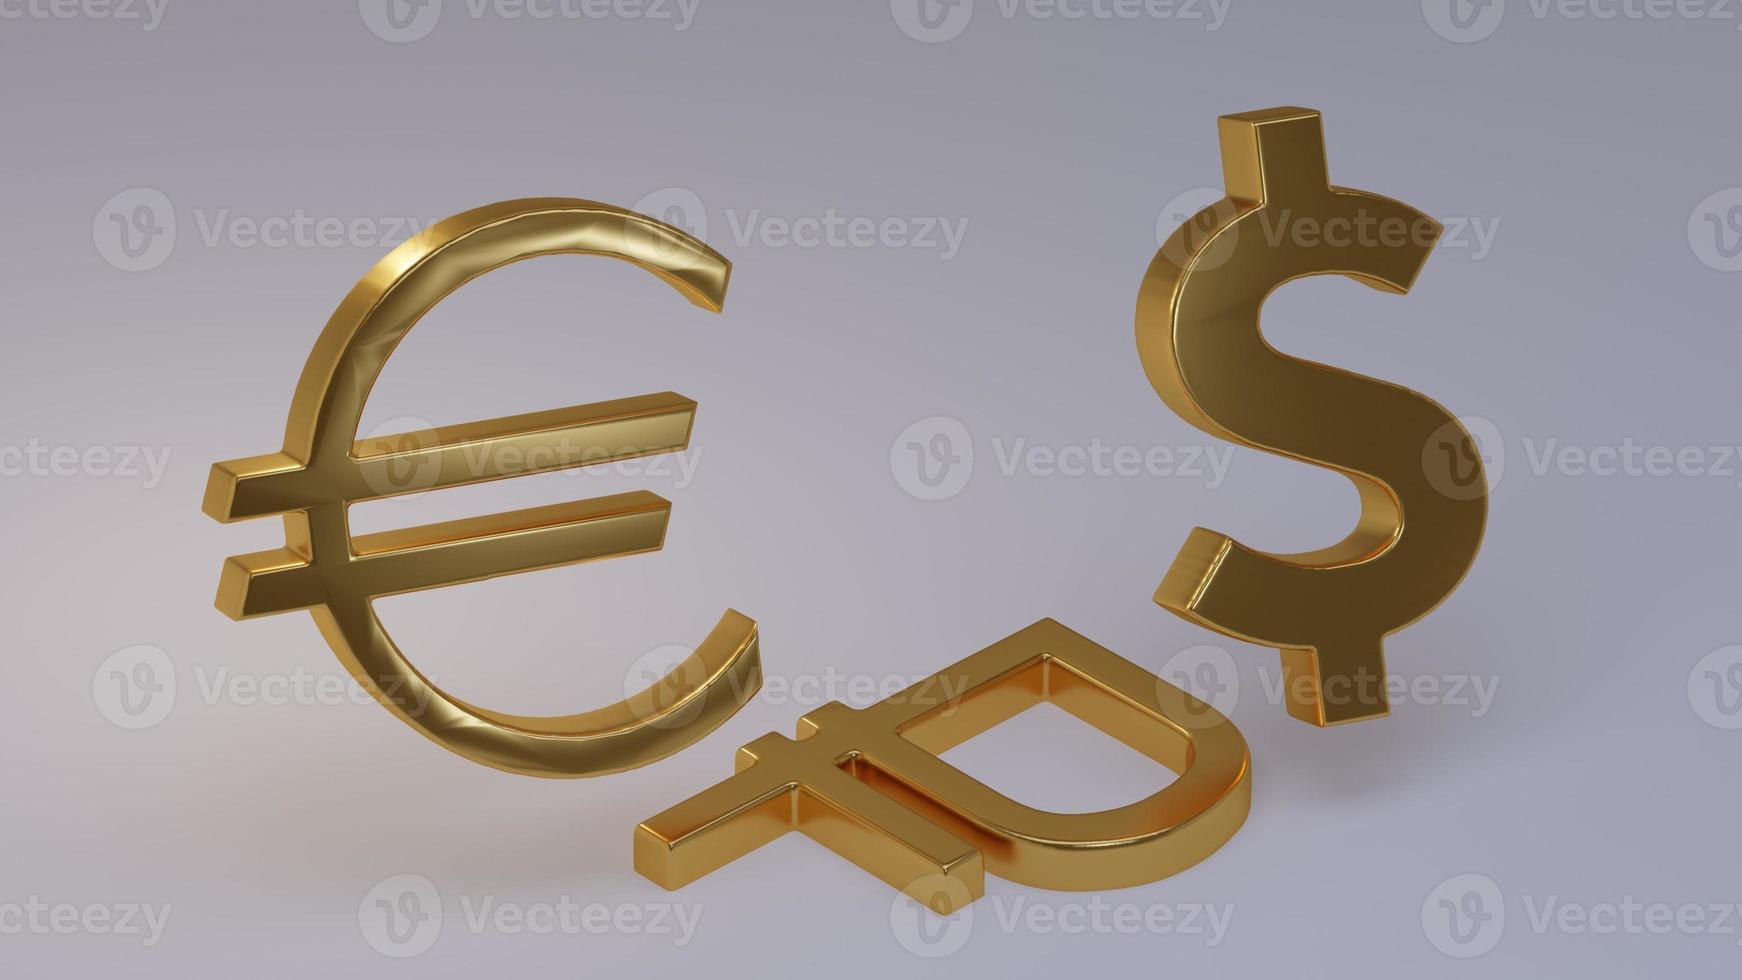 signos de monedas monetarias euro, dólar y rublo ruso sobre fondo claro en espacio 3d. el signo del rublo se encuentra como símbolo de la depreciación del tipo de cambio. foto